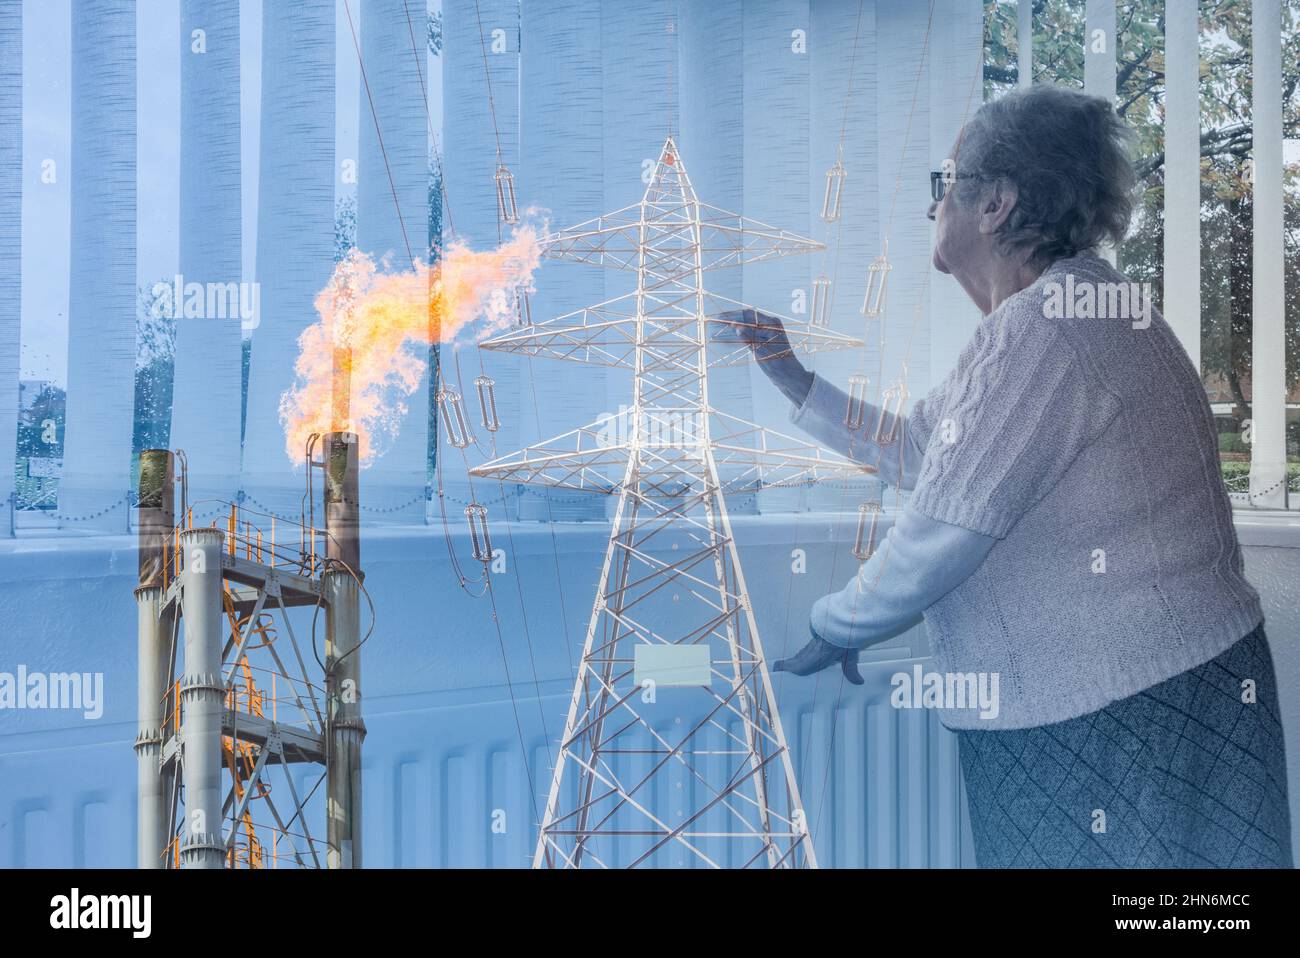 90-jährige Frau, die mit der Hand auf den Heizkörper aus dem Fenster schaute. Strompylon und Industriegas Flare Schornstein Bild gemischt. Energiekrise Konzept. Stockfoto